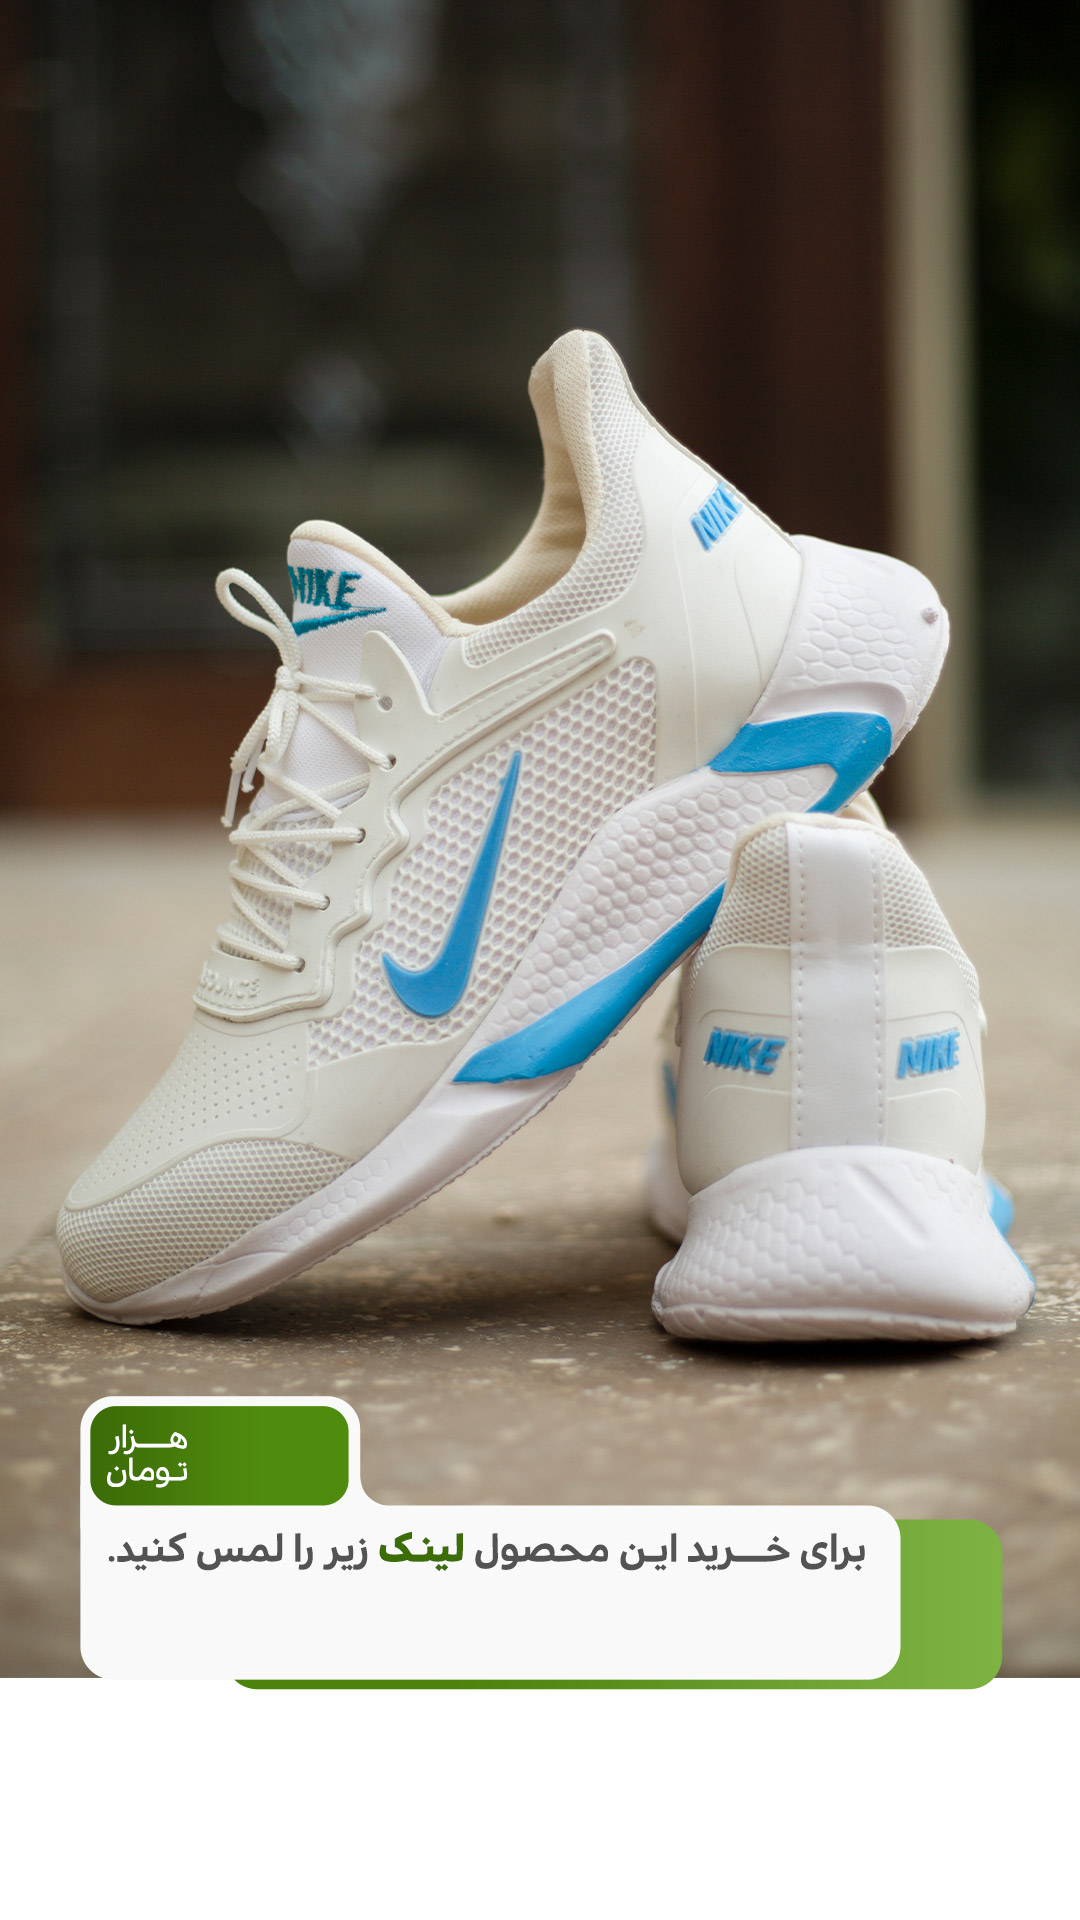 قیمت و خرید آنلاین کفش مردانه nike مدل adrian (سفید آبی)